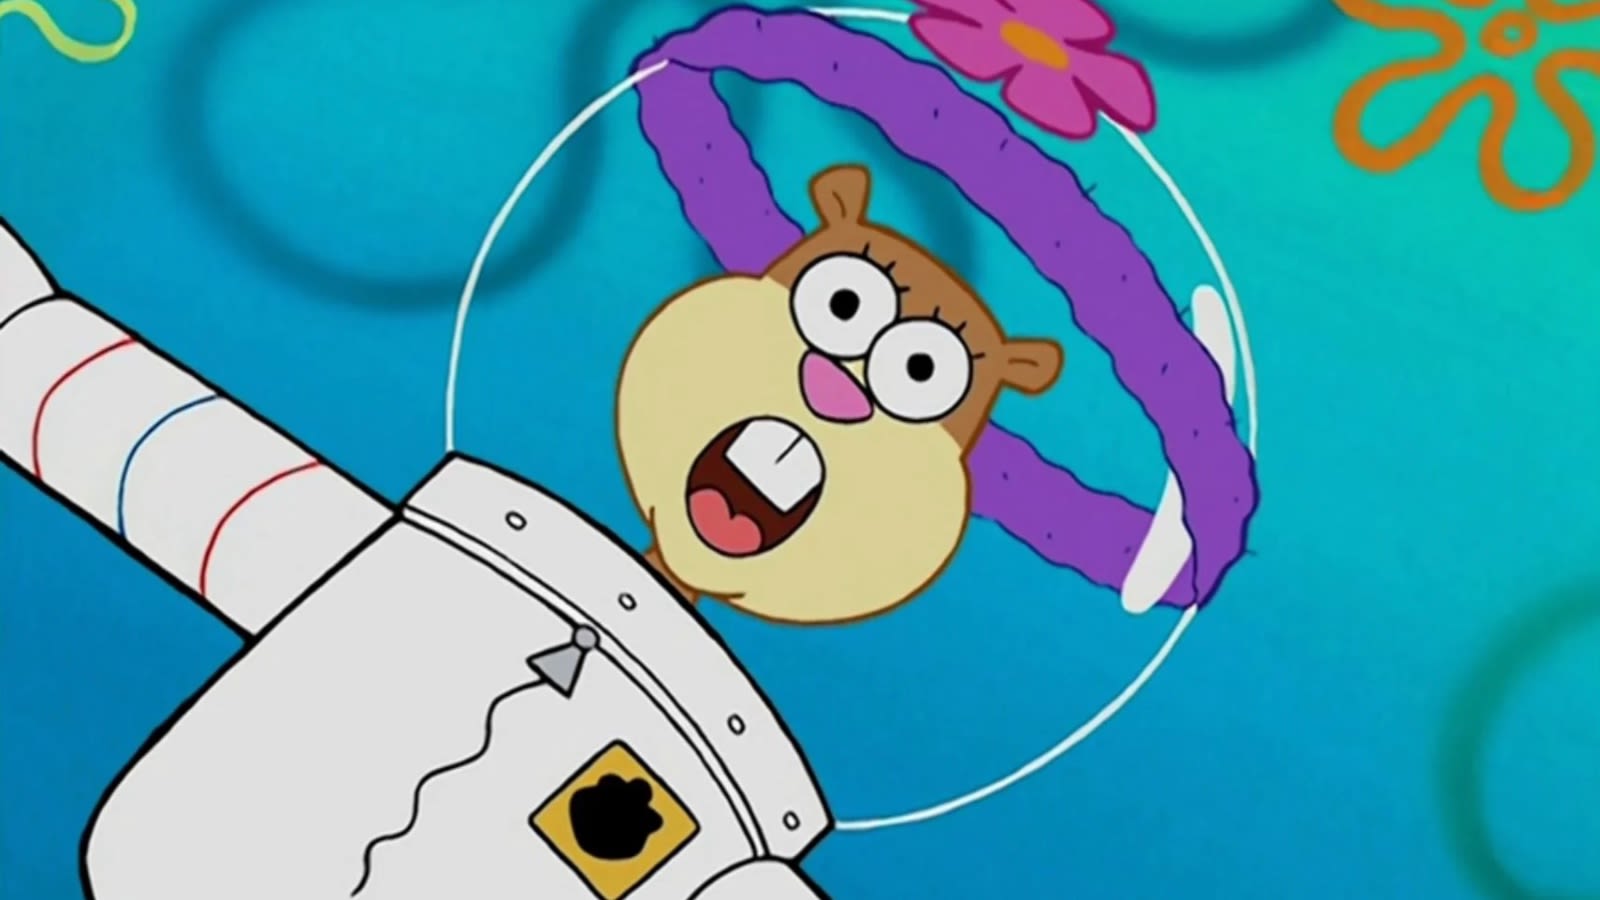 Did Sandy Cheeks die in Spongebob Squarepants? Theory explained - Dexerto